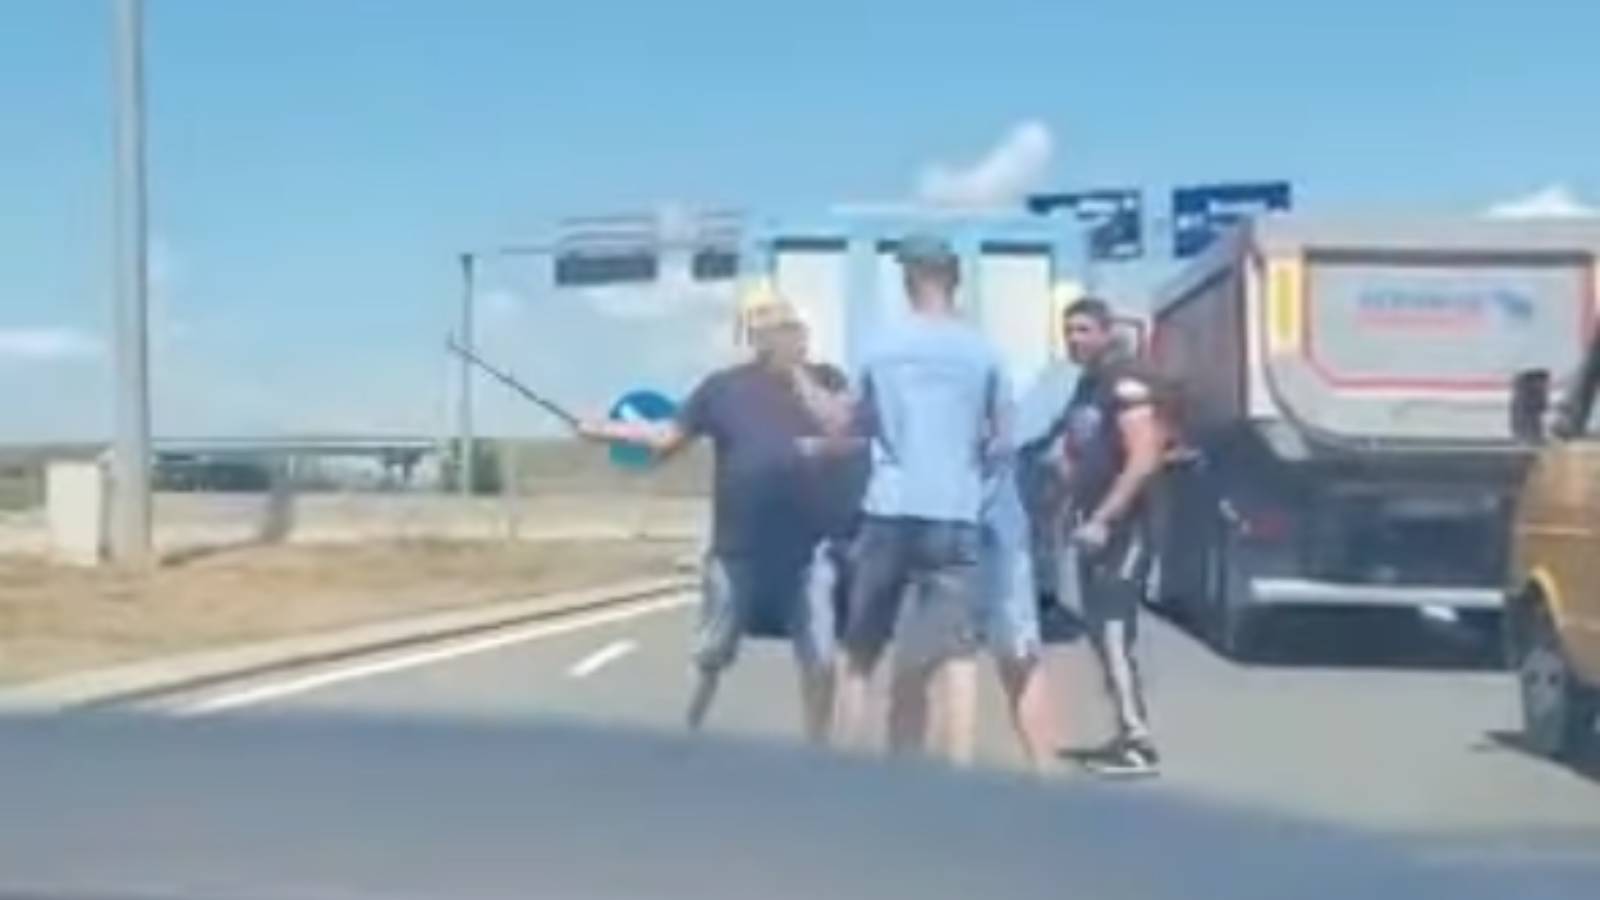 VIDEO Slår Leverierul-trafik i nærheden af ​​Sibiu Lufthavn